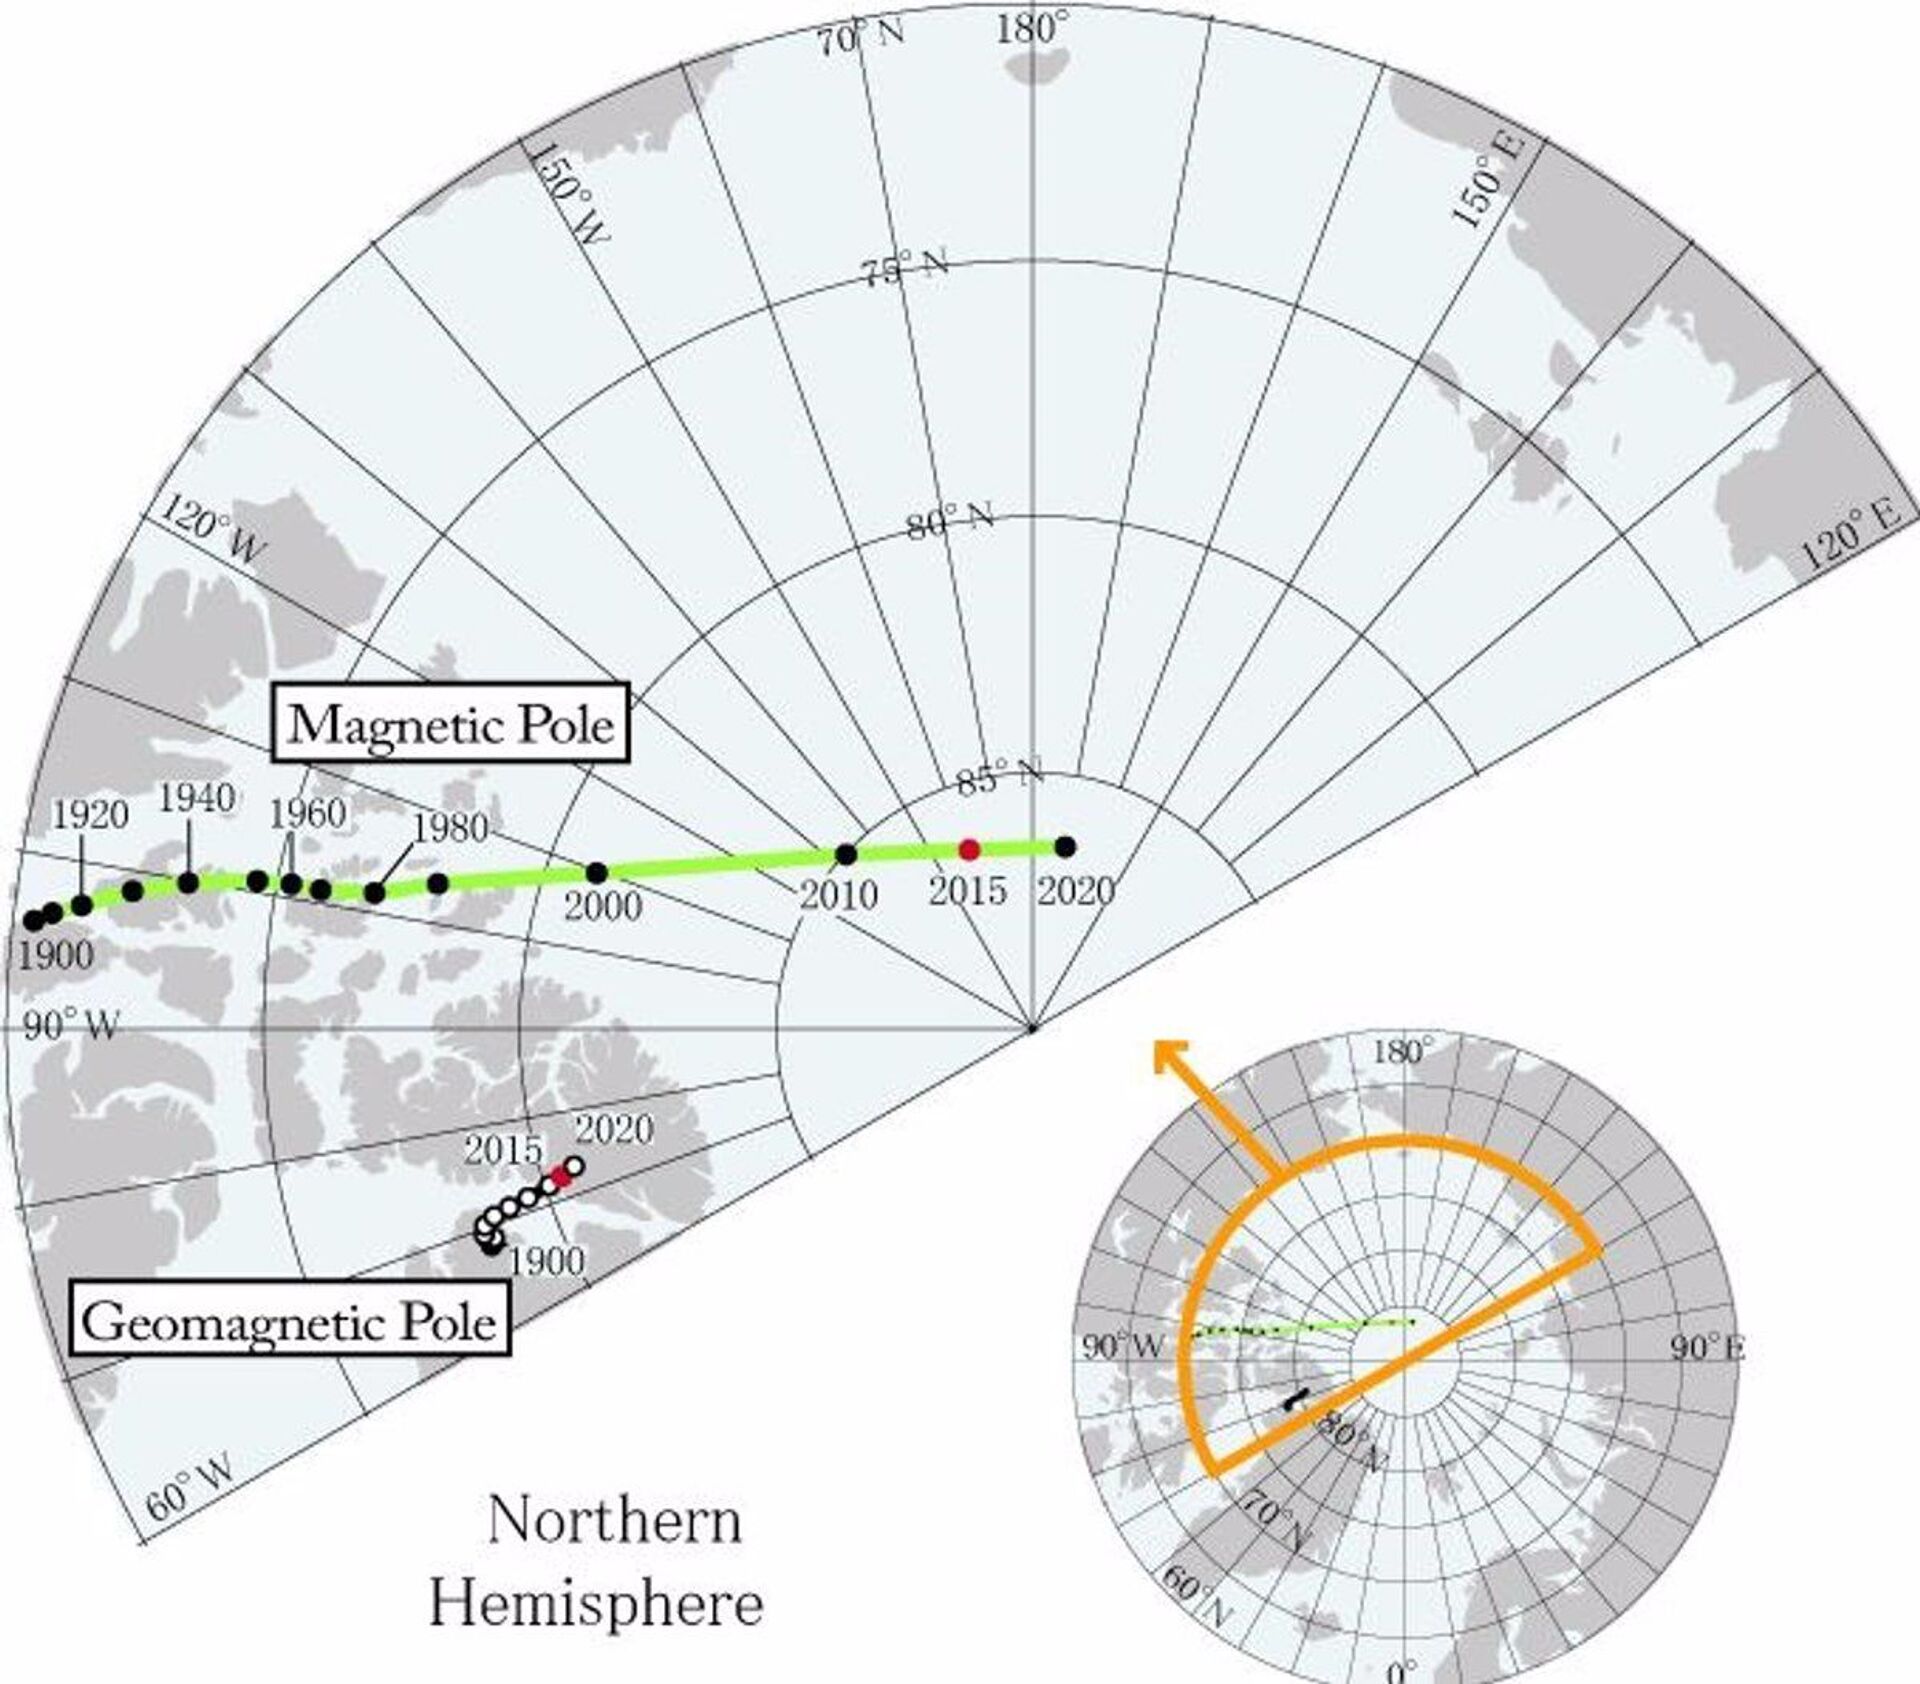 كارثة مغناطيسية.. فريق من العلماء يوضح تبعات حدوث انعكاس قطبي قريب - سبوتنيك عربي, 1920, 24.03.2021